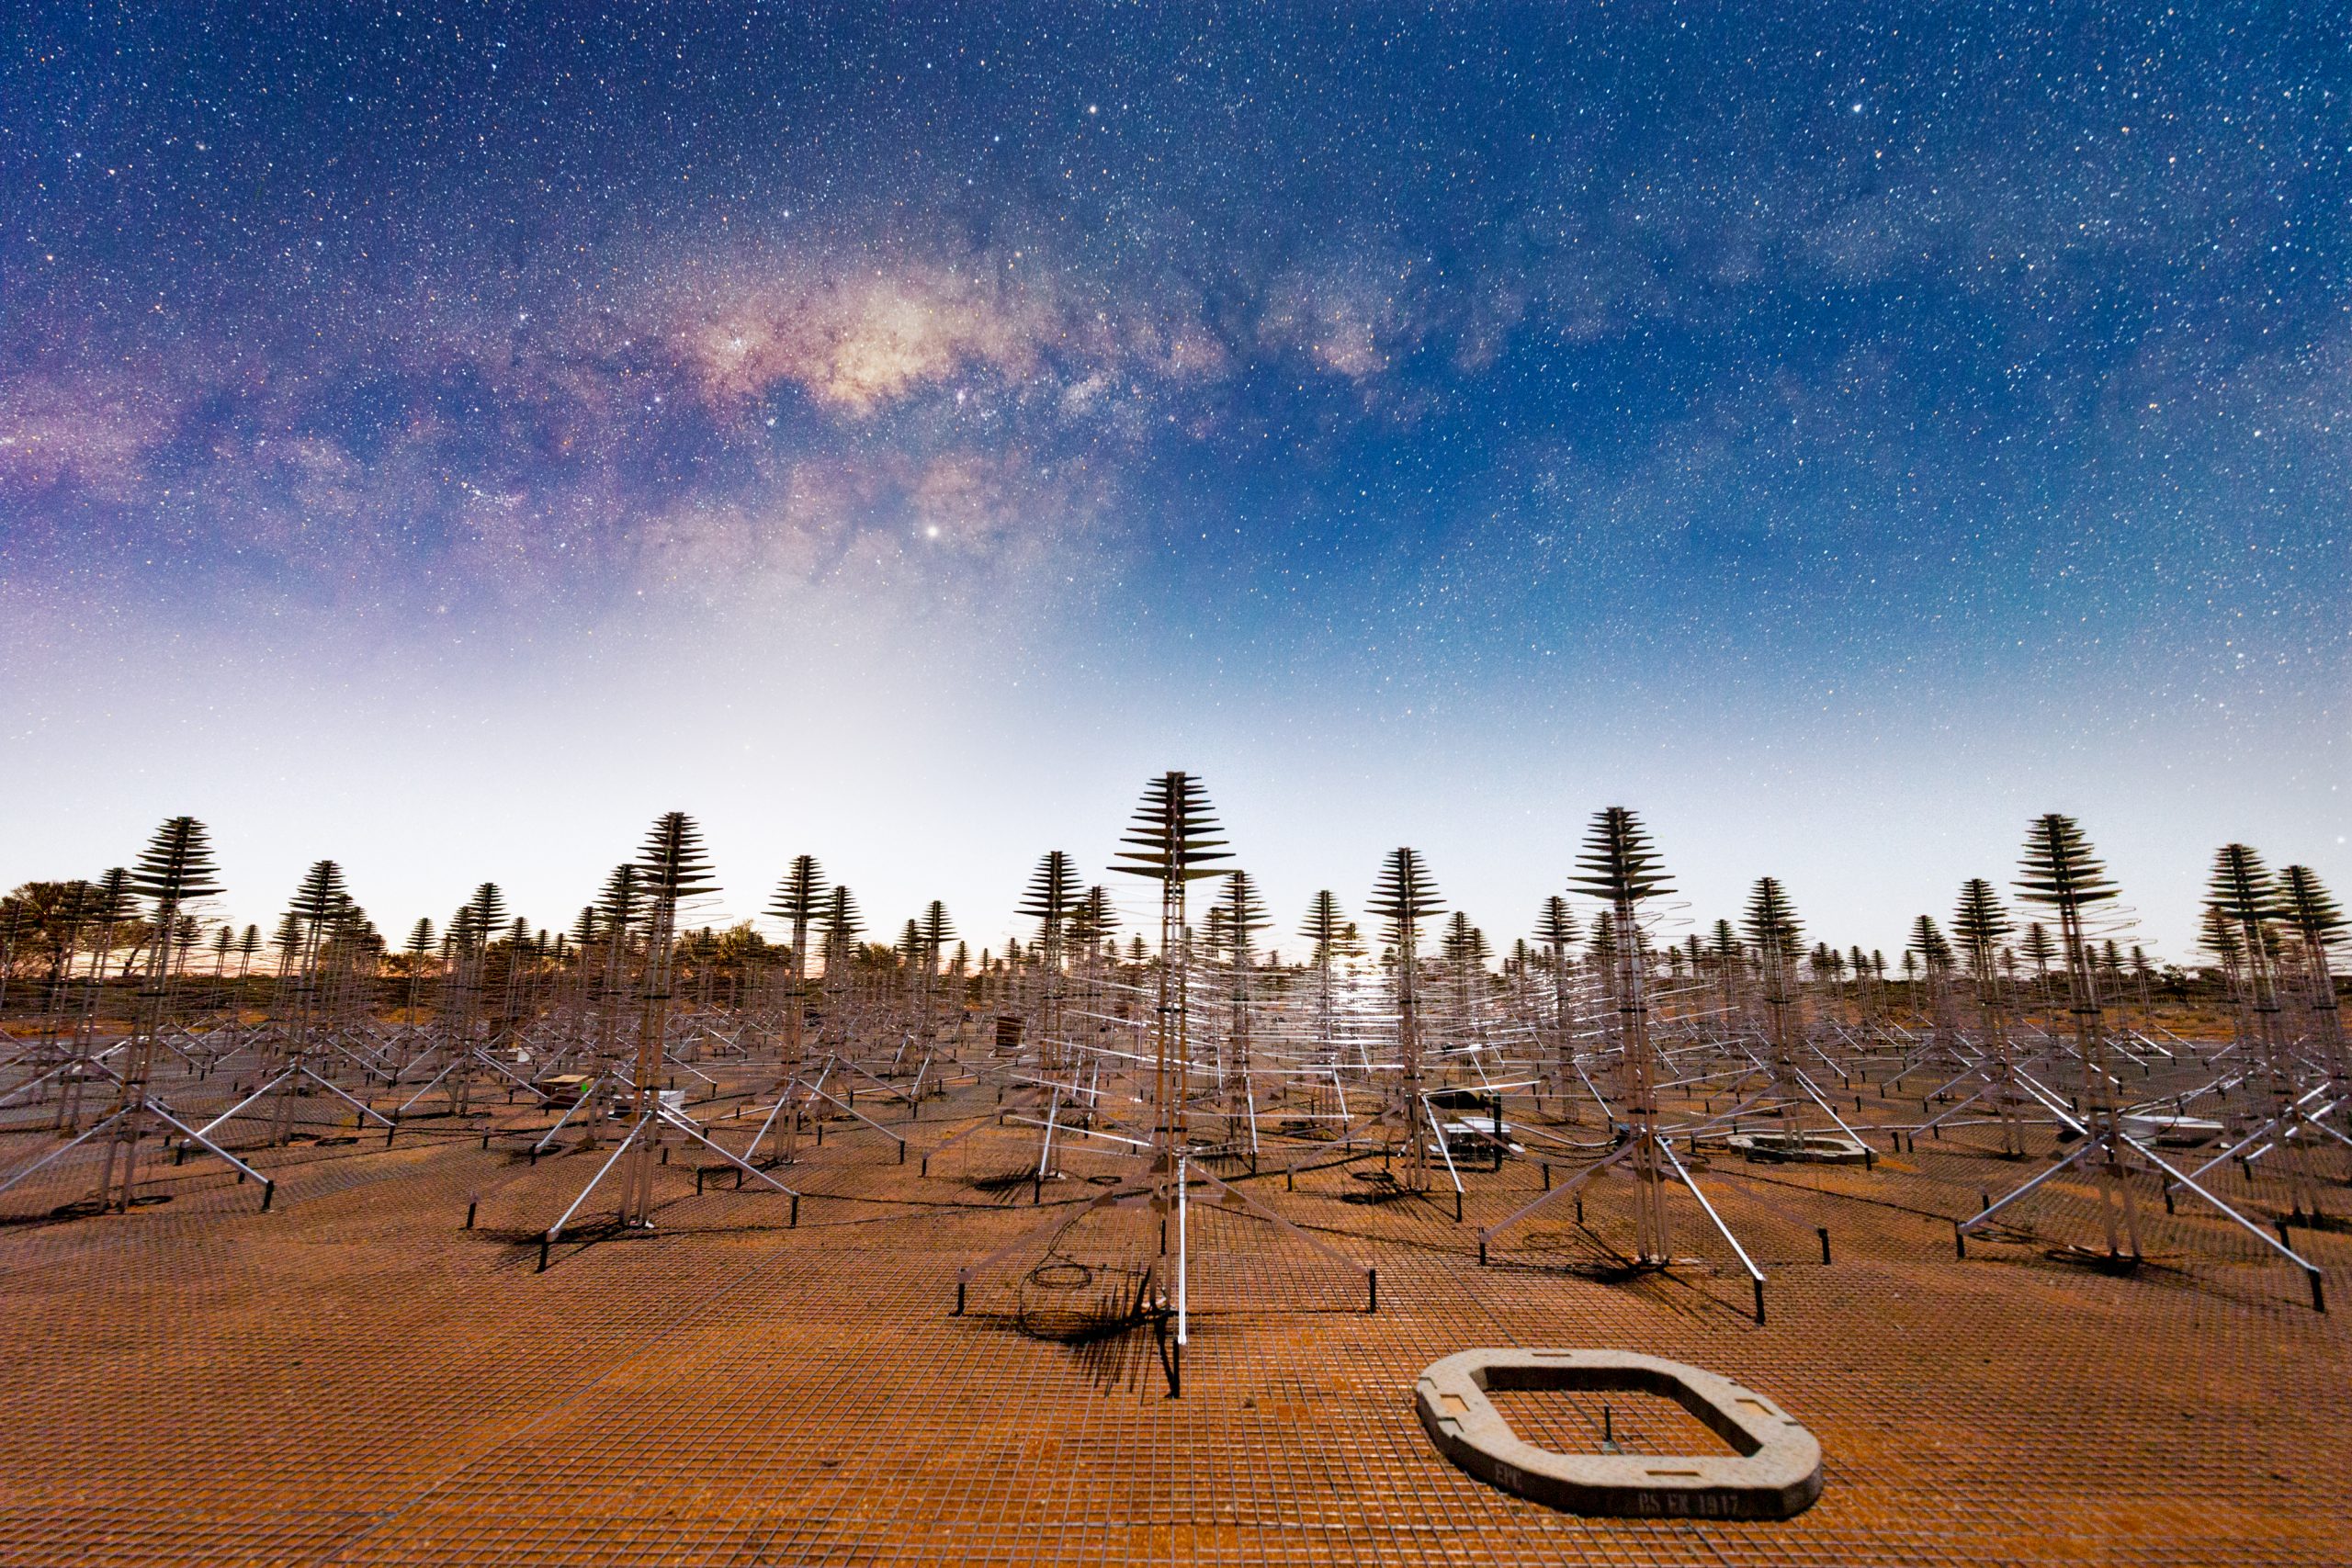 澳大利亚西部默奇森射电天文台的一个原型示范阵列